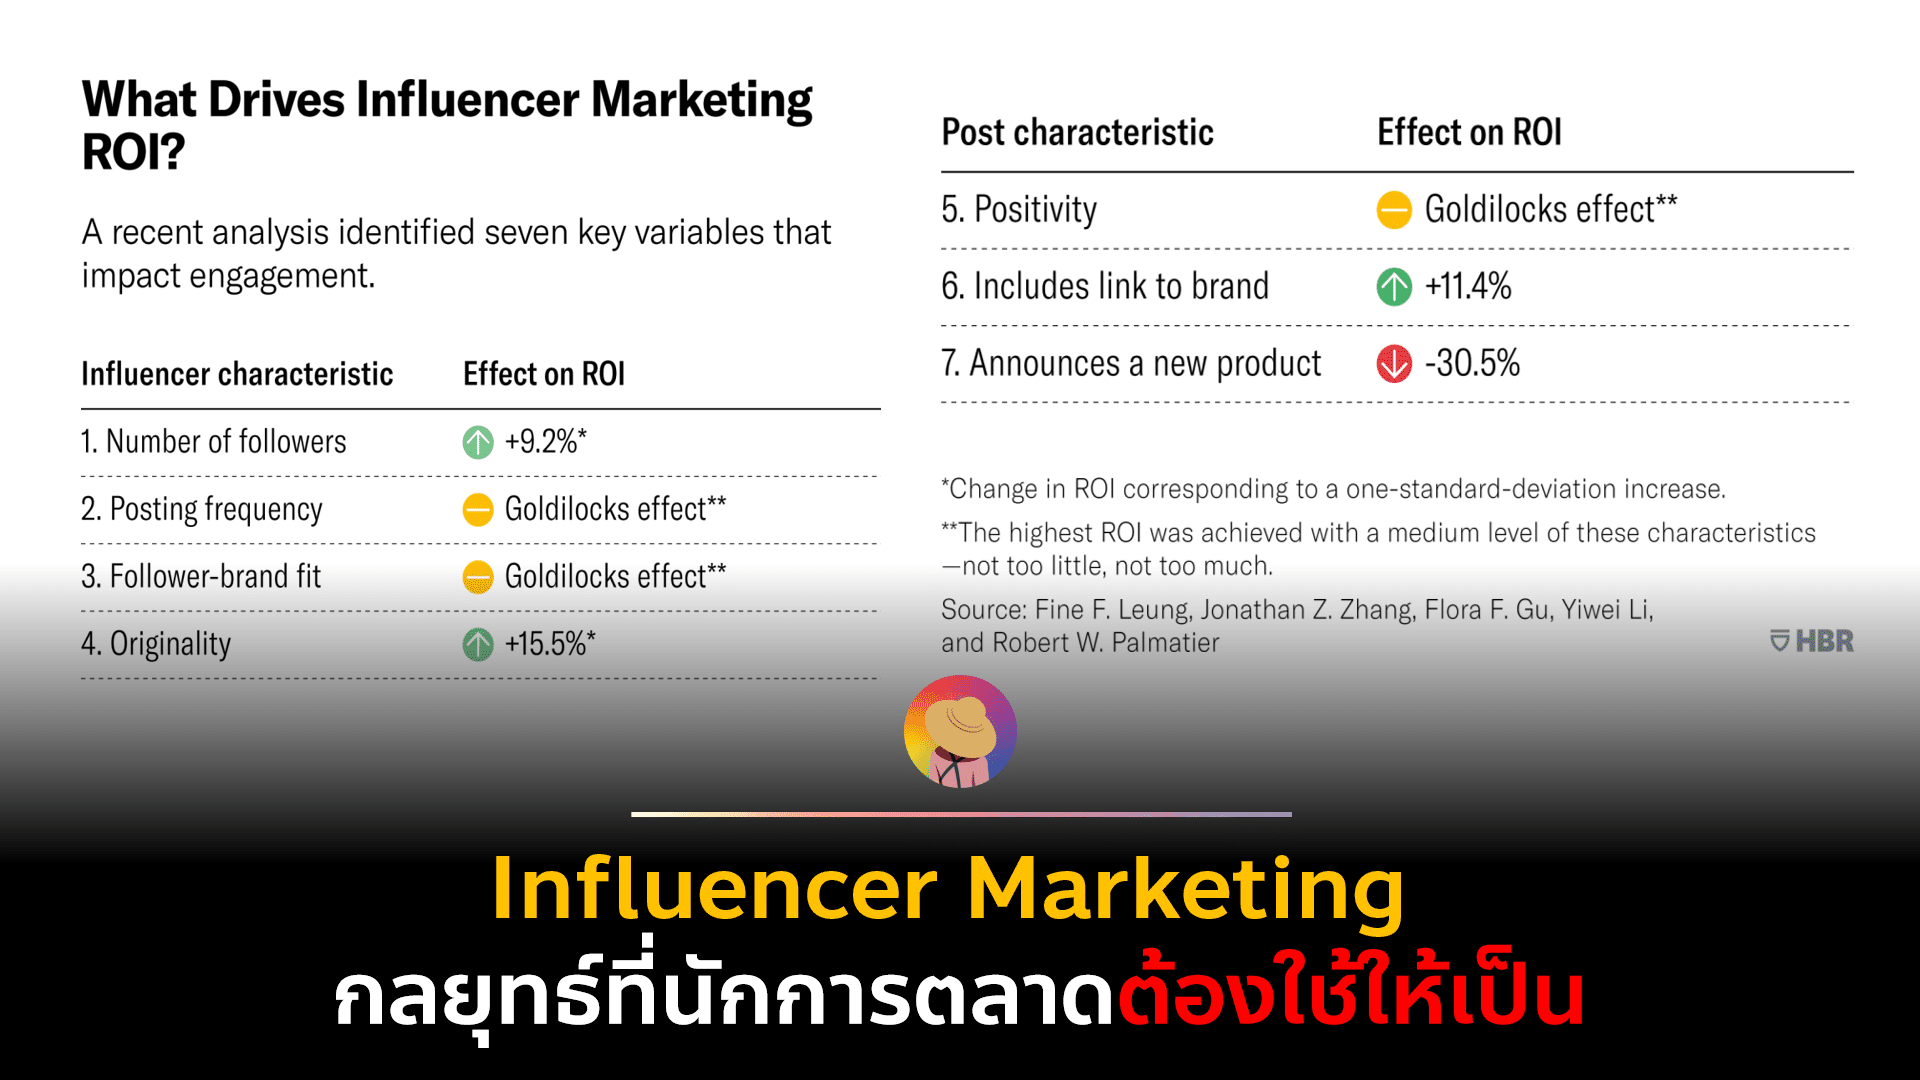 Influencer Marketing กลยุทธ์ที่นักการตลาดต้องใช้ให้เป็น